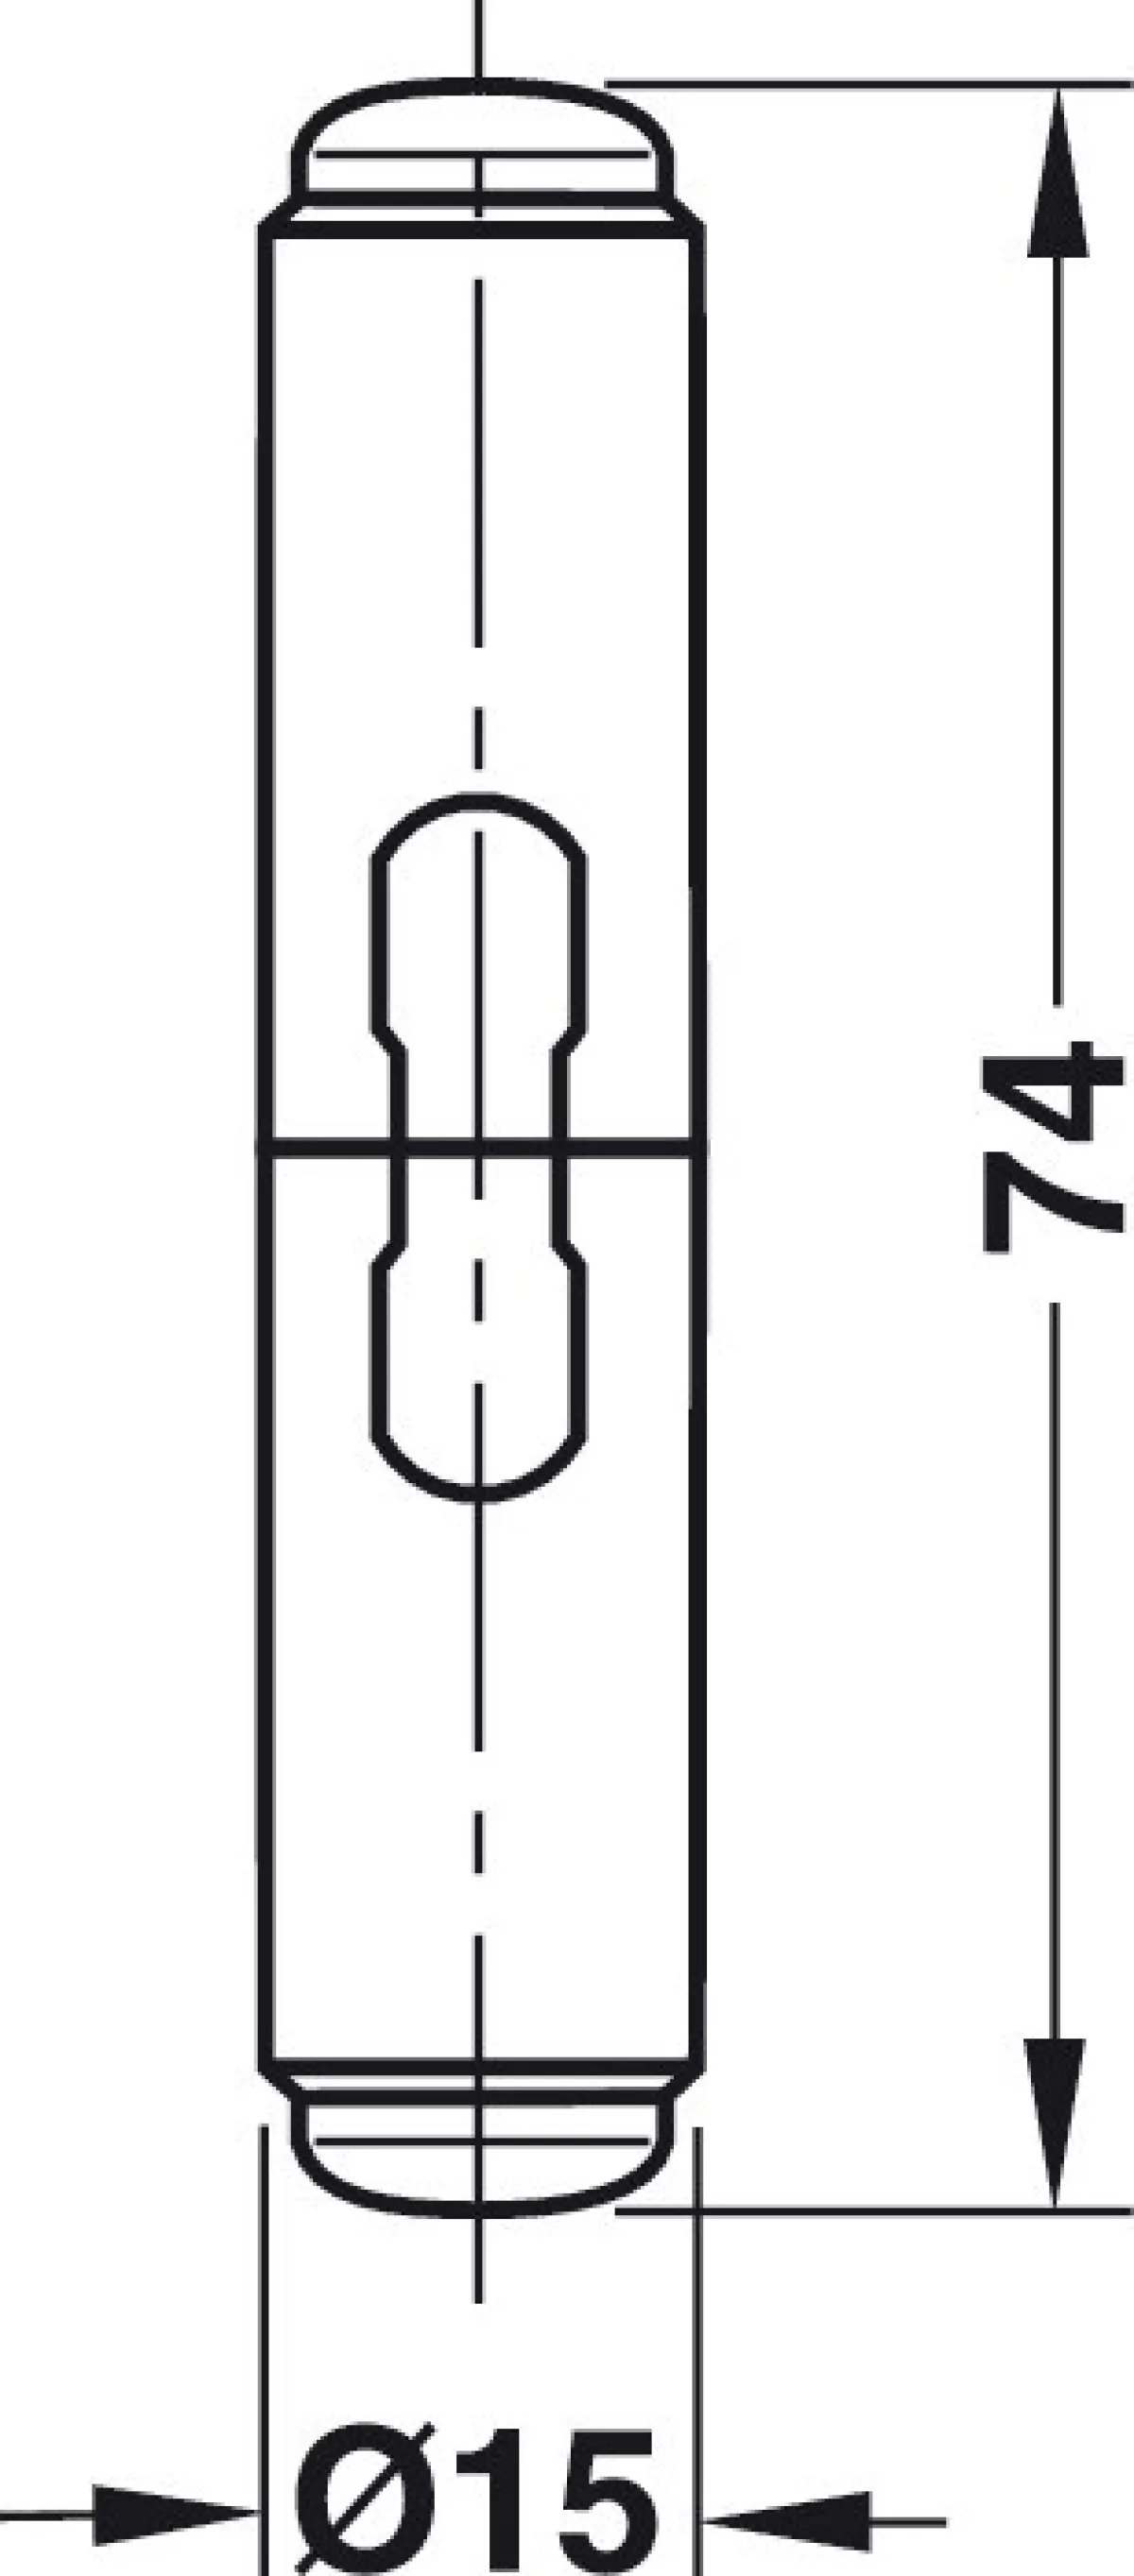 #2 - Dekorativ dækkappe til FI 1 indboringshængsel